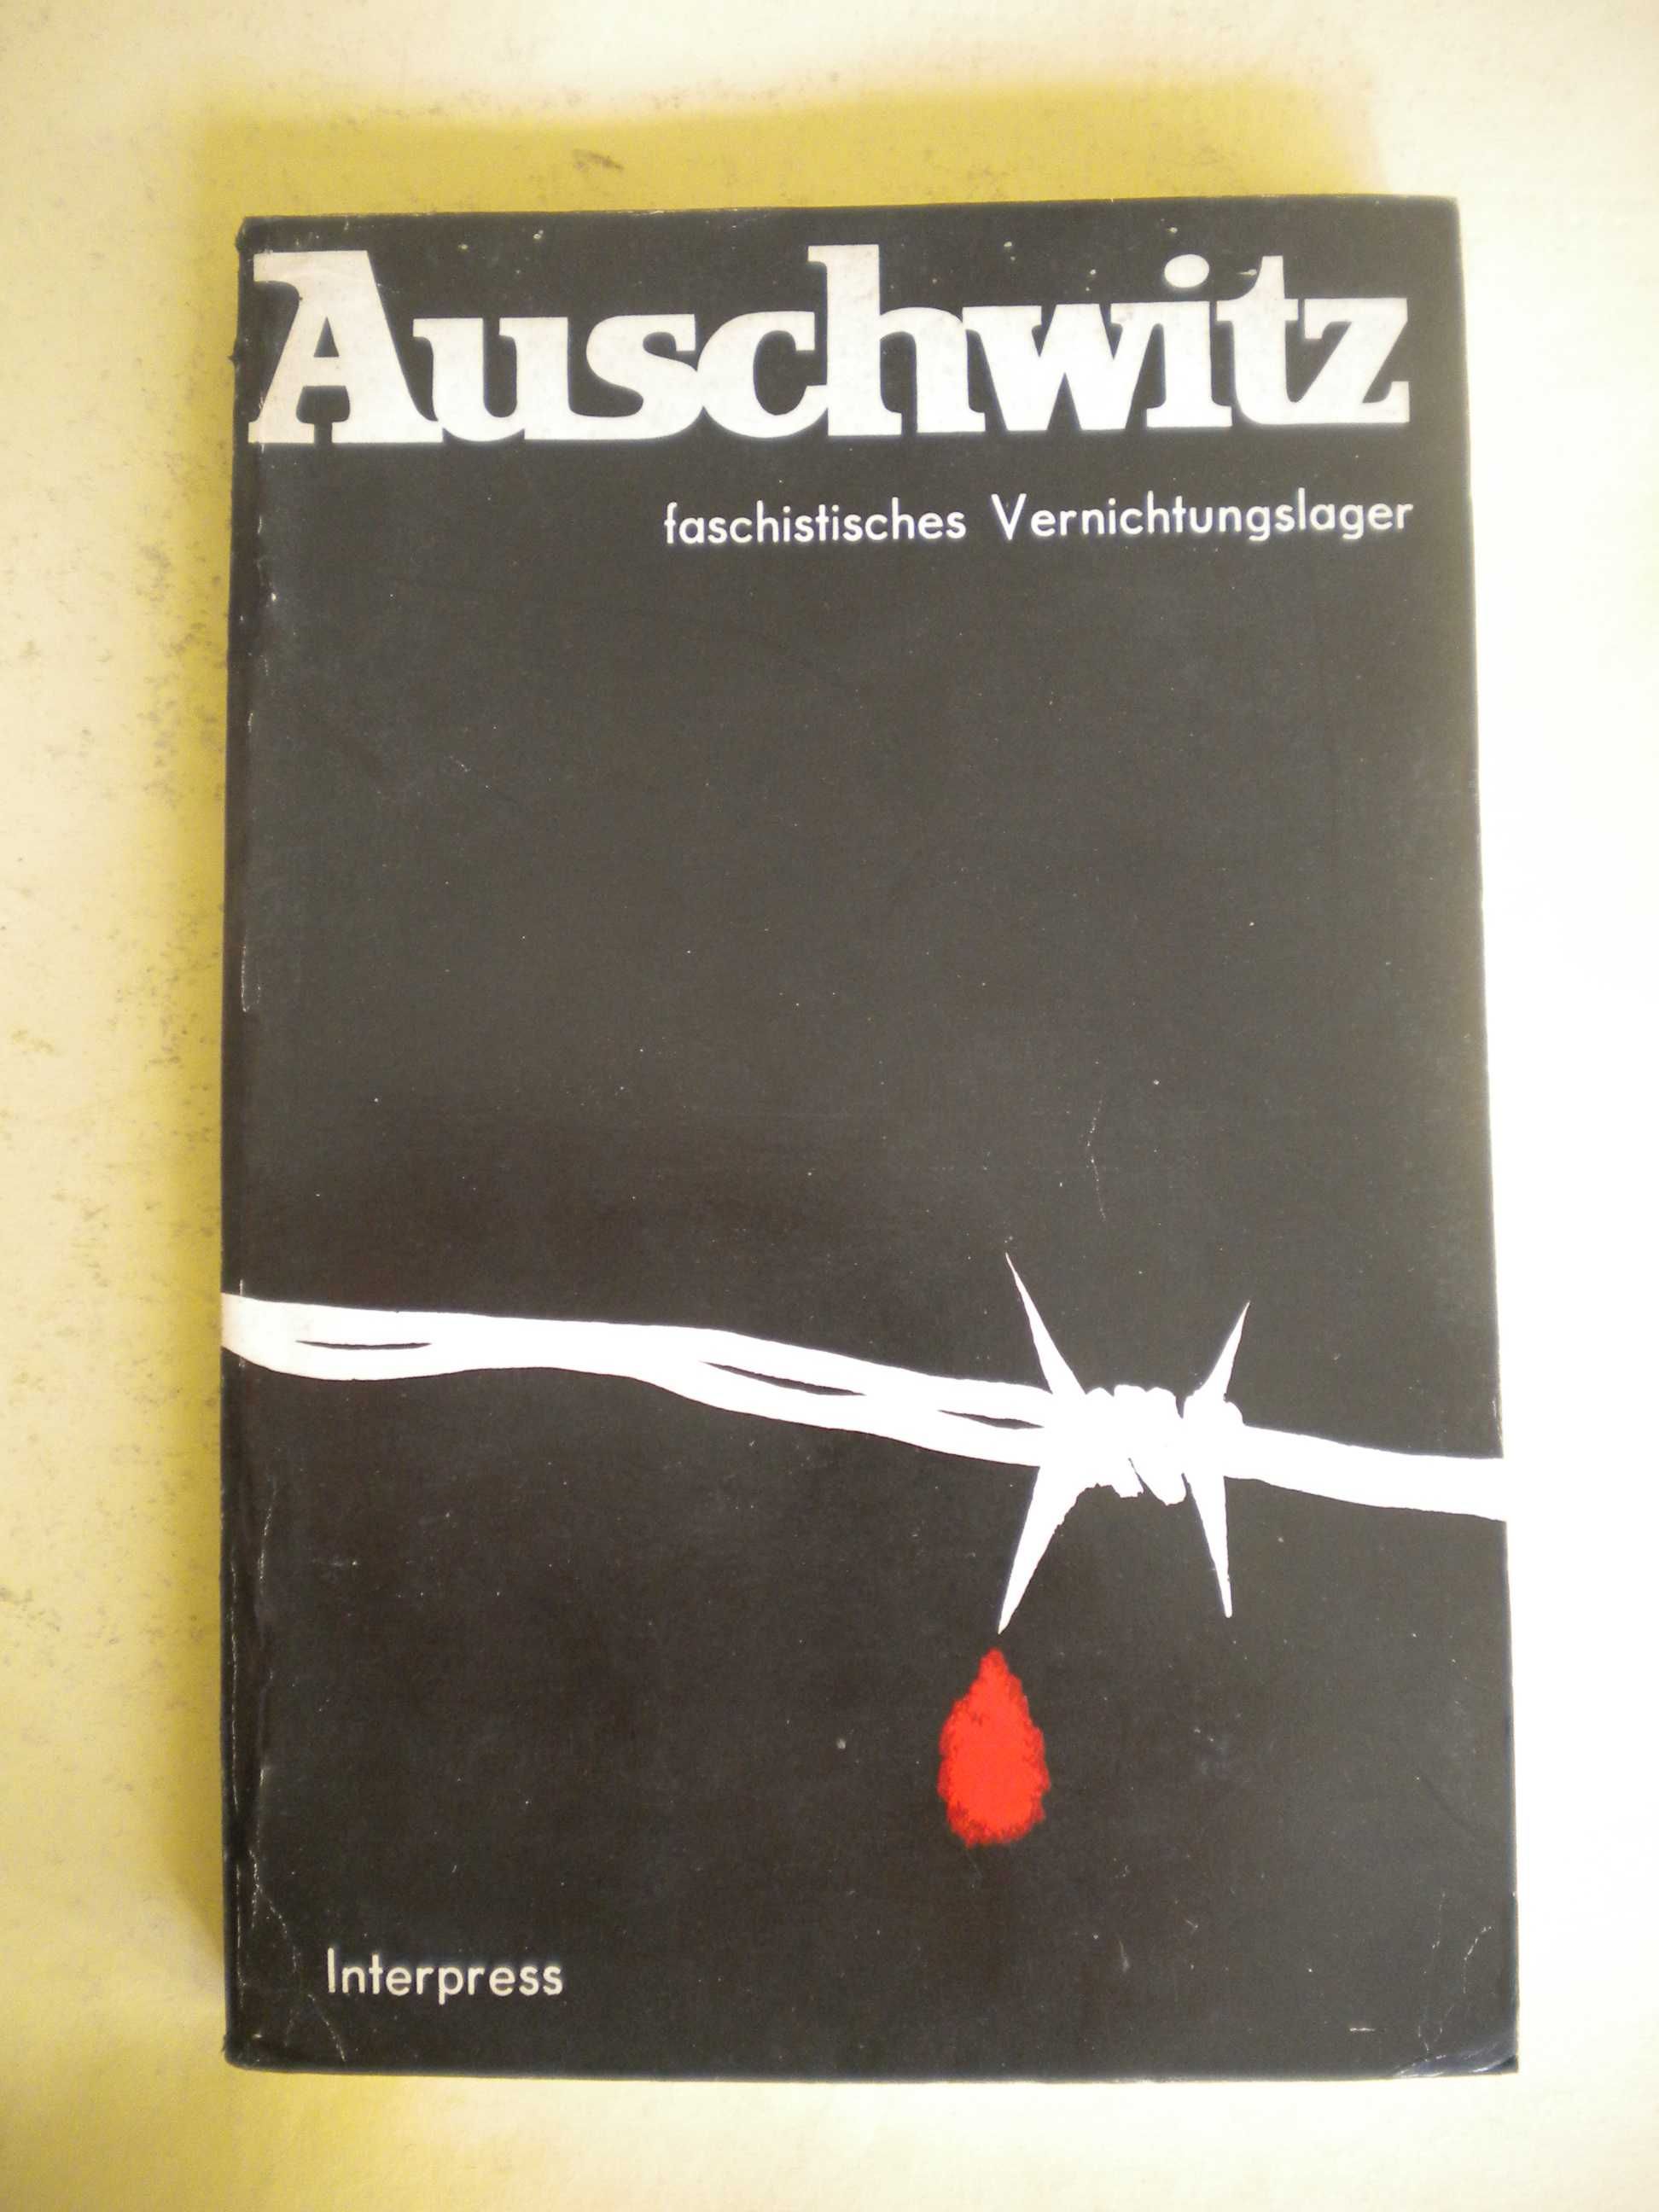 Auschwitz
Faschistisches Vernichtungslager